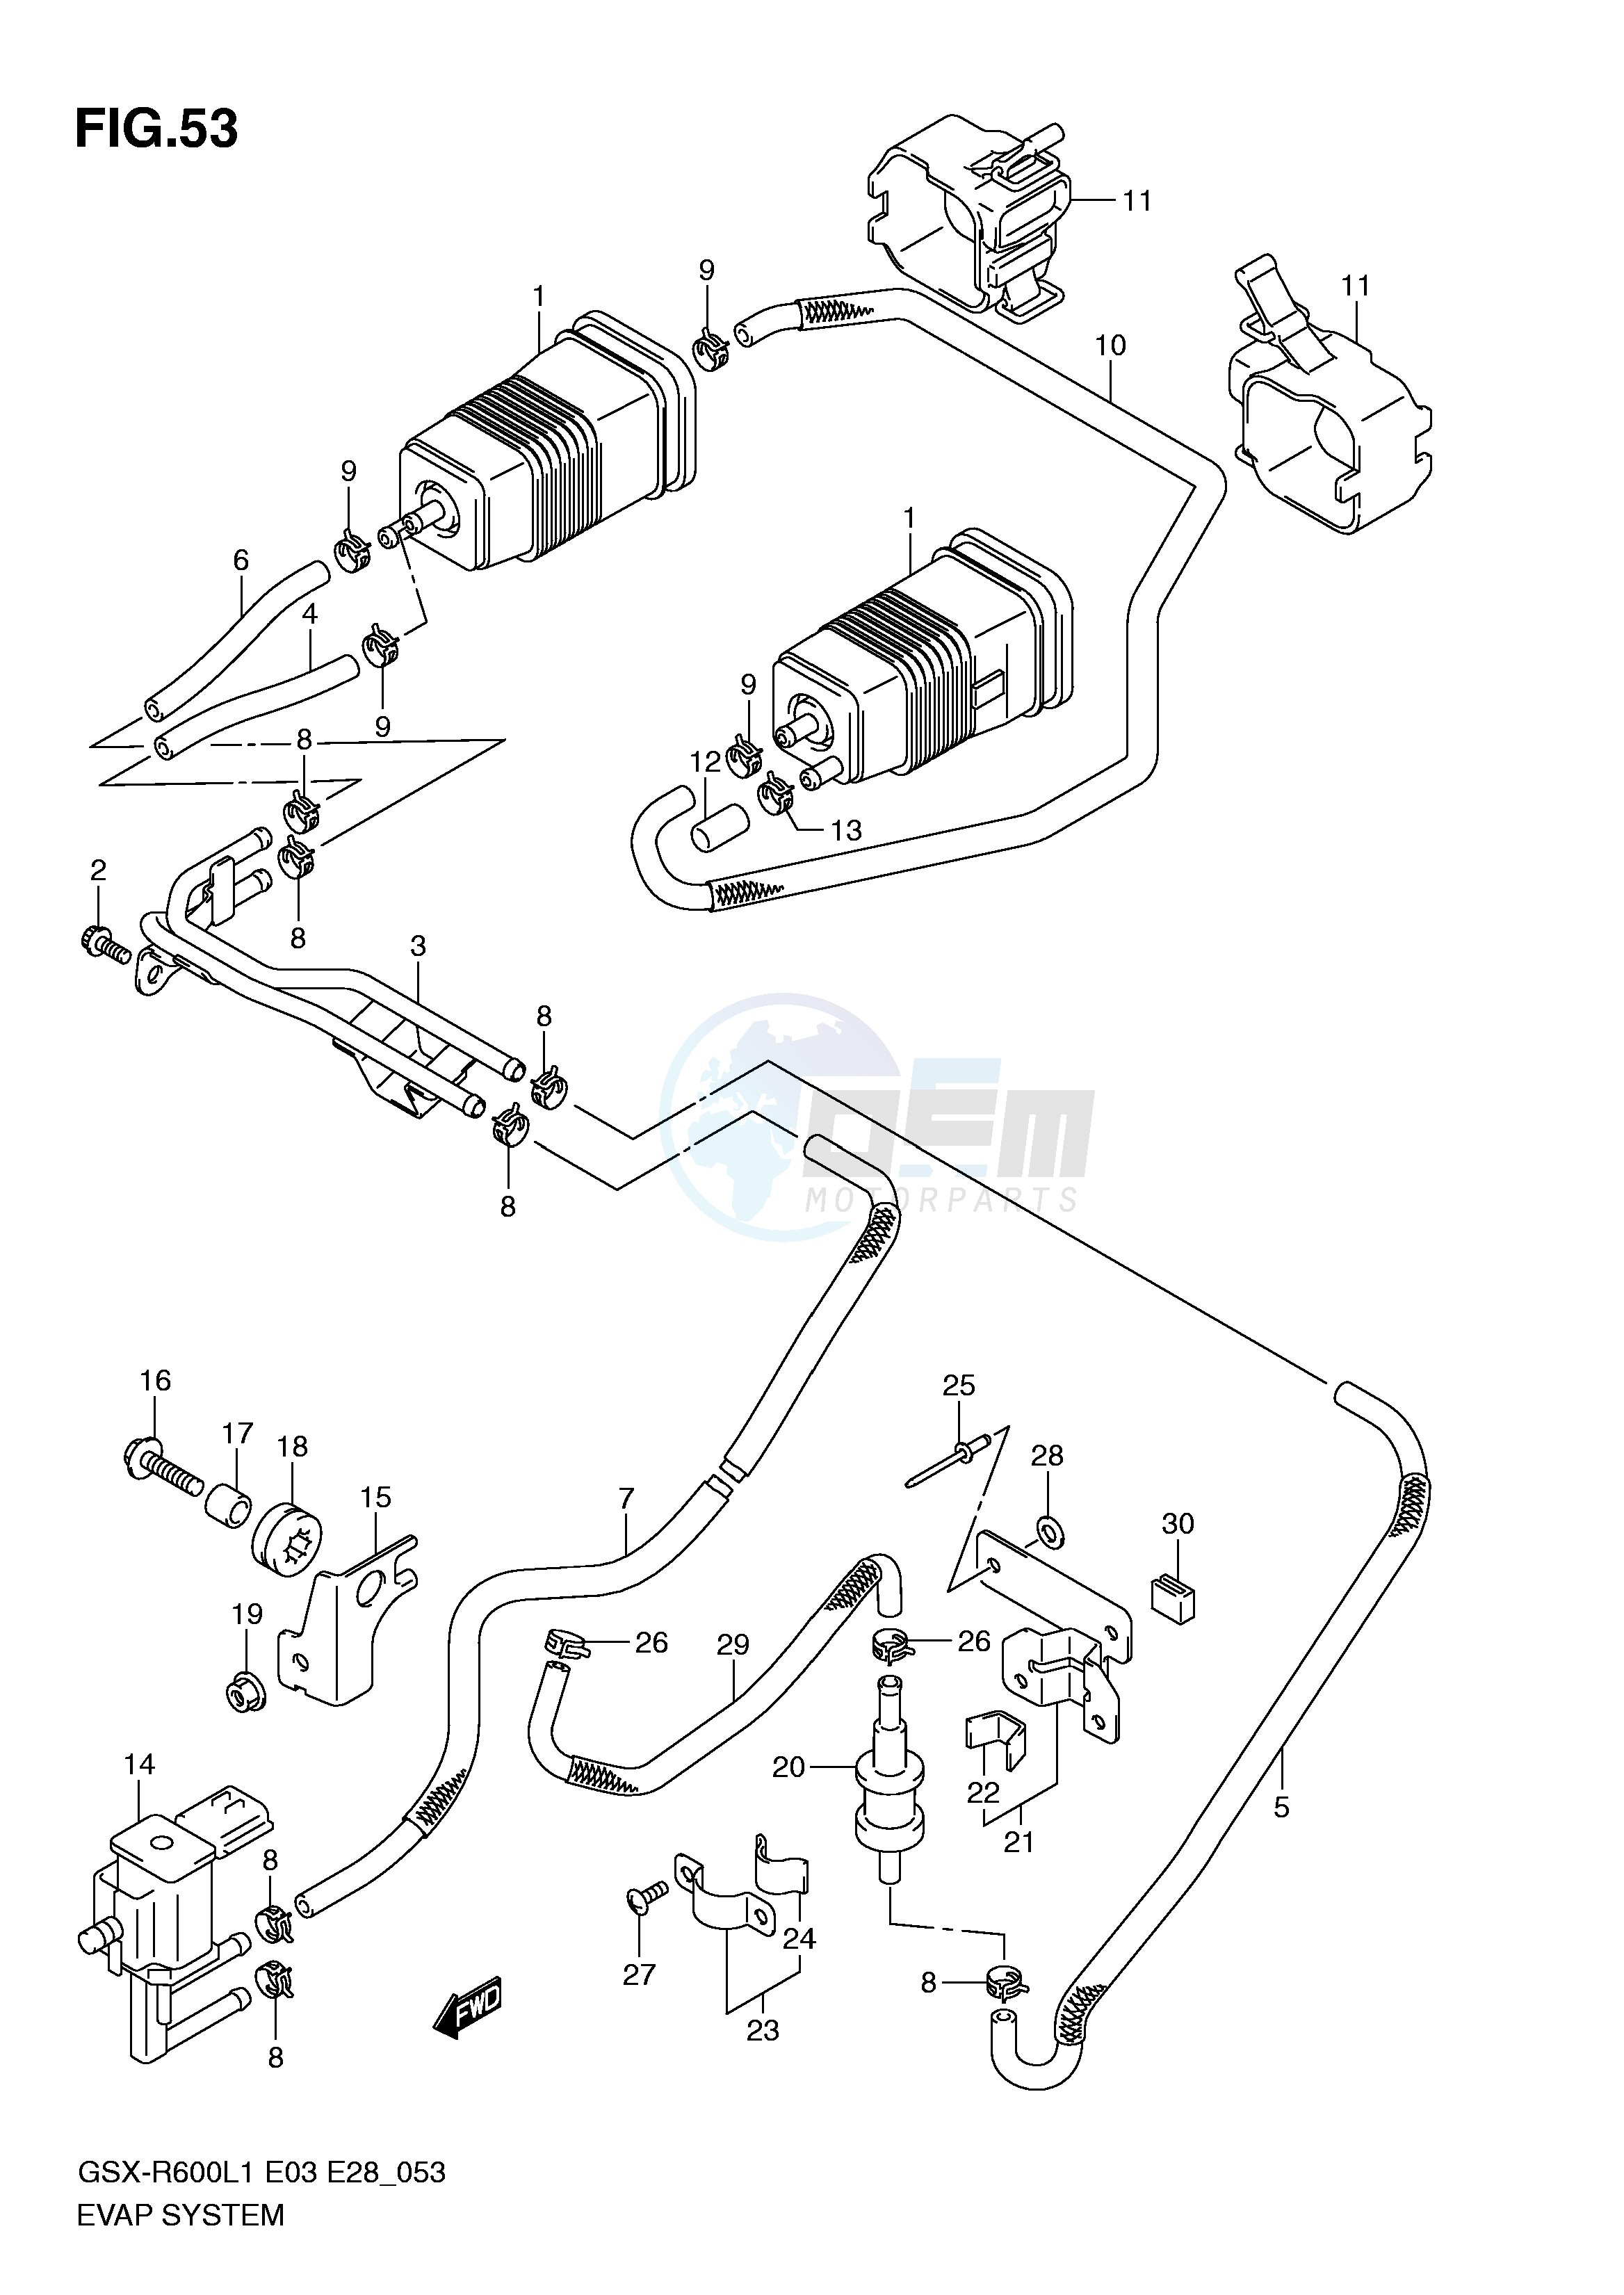 EVAP SYSTEM (GSX-R600L1 E33) blueprint